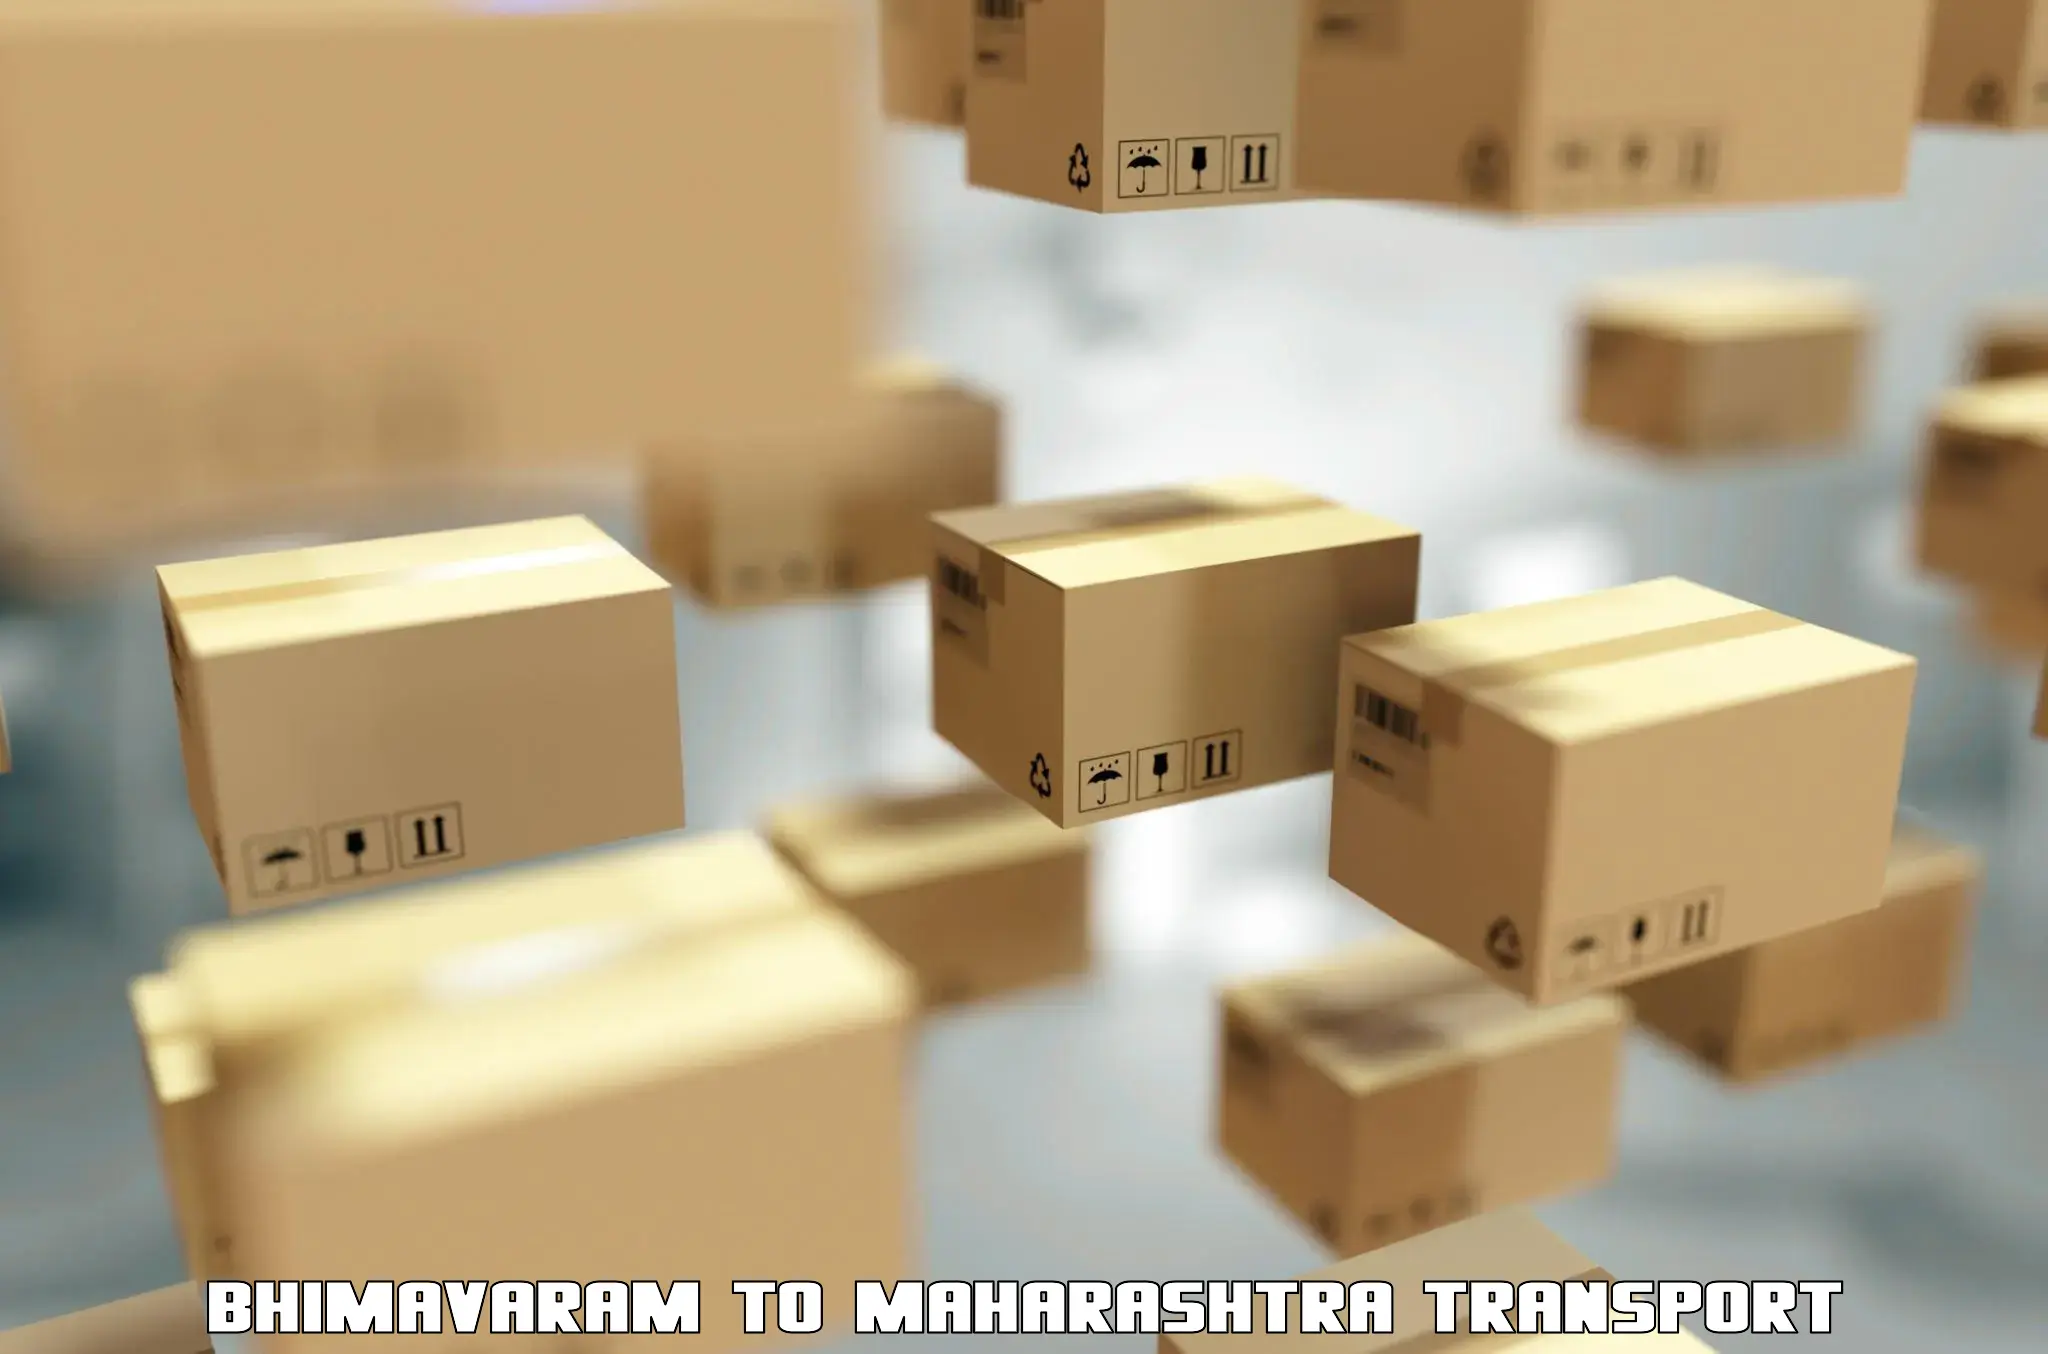 Container transport service Bhimavaram to Mahur